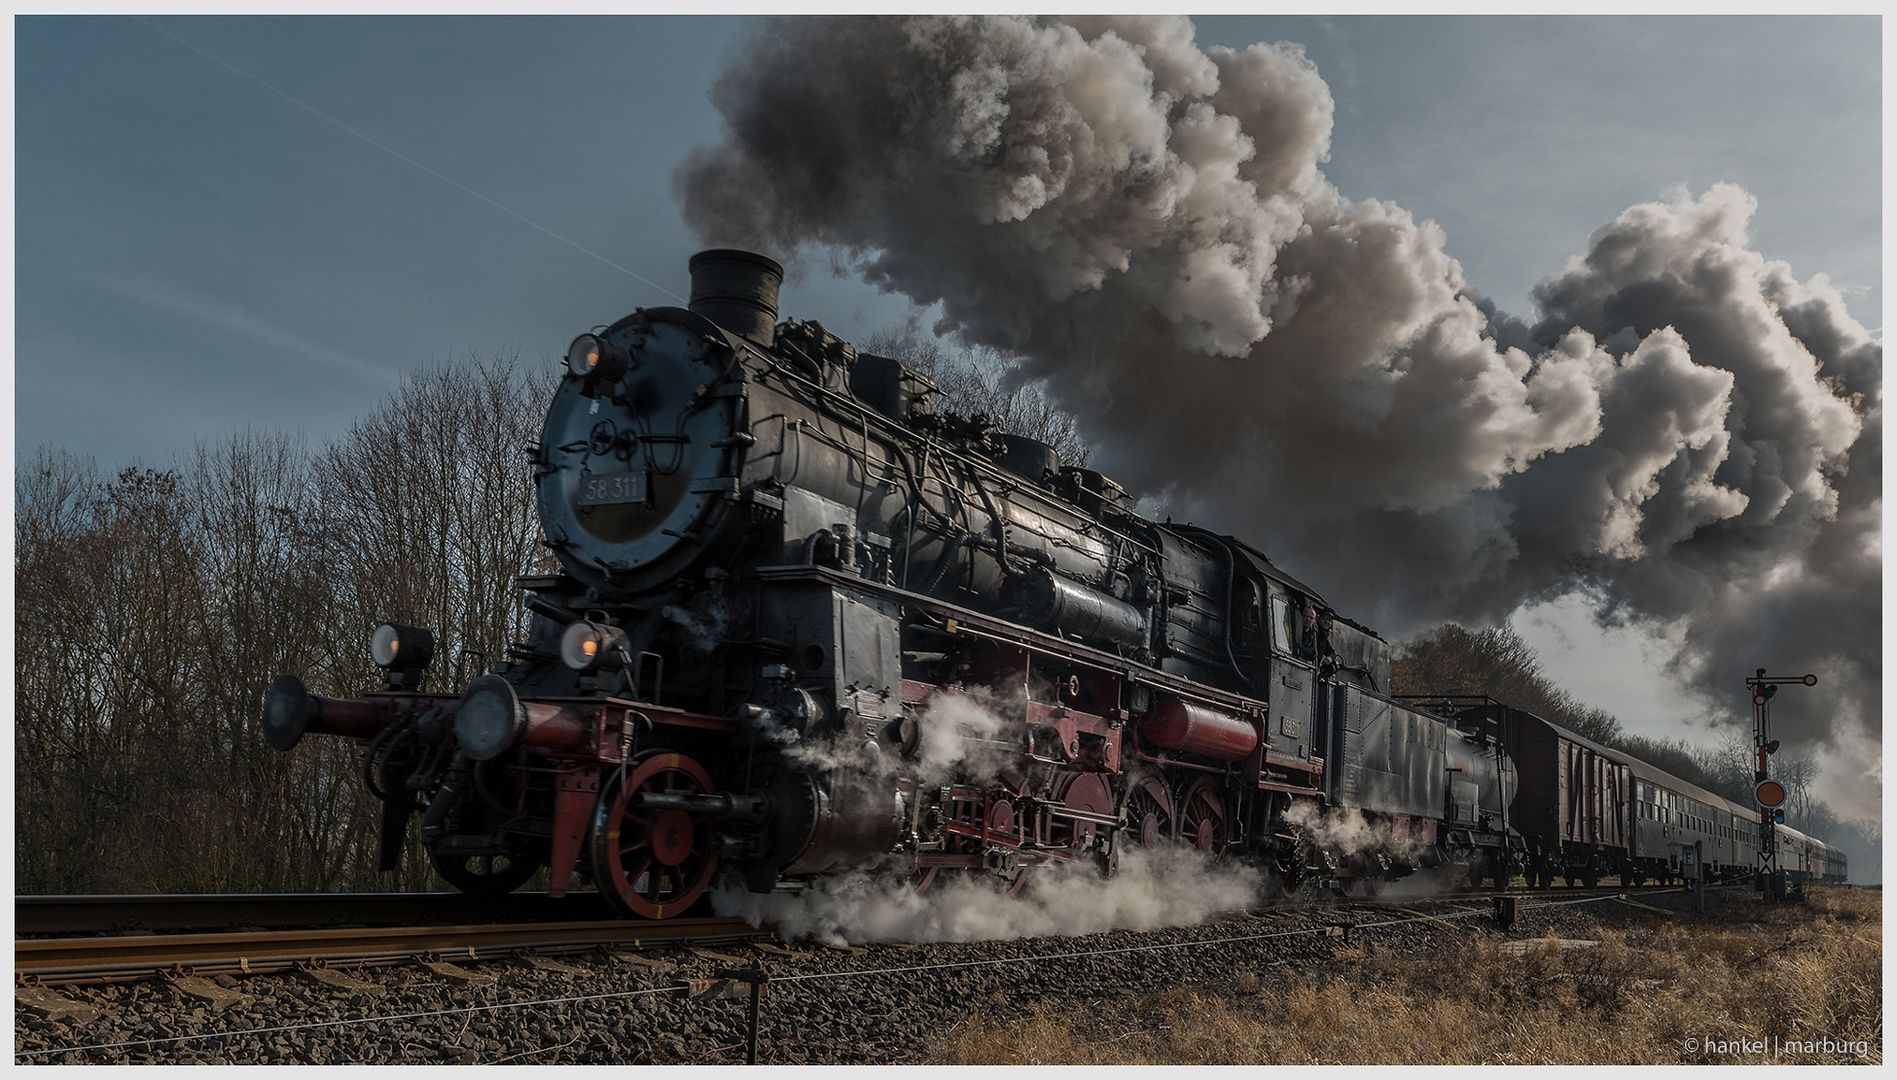  Dampflok Hintergrundbild 1897x1080. Im Gegenlicht Foto & Bild. eisenbahn, dampflok, westerwald Bilder auf fotocommunity